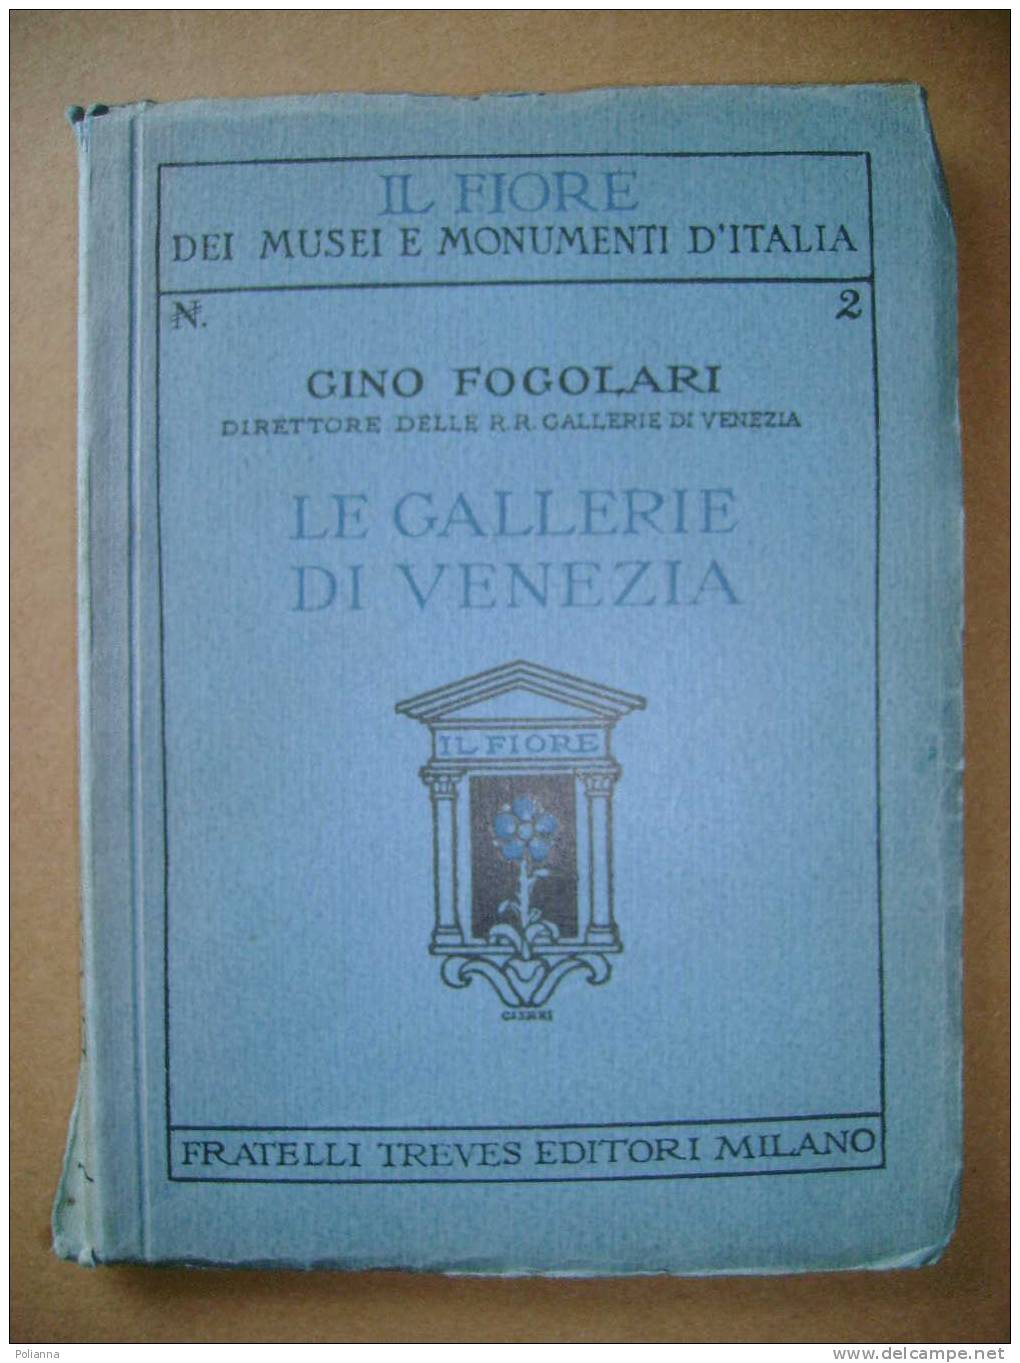 PAE/13 Gino Fogolari IL FIORE - LE GALLERIE DI VENEZIA Treves Anni '30 - Arte, Architettura